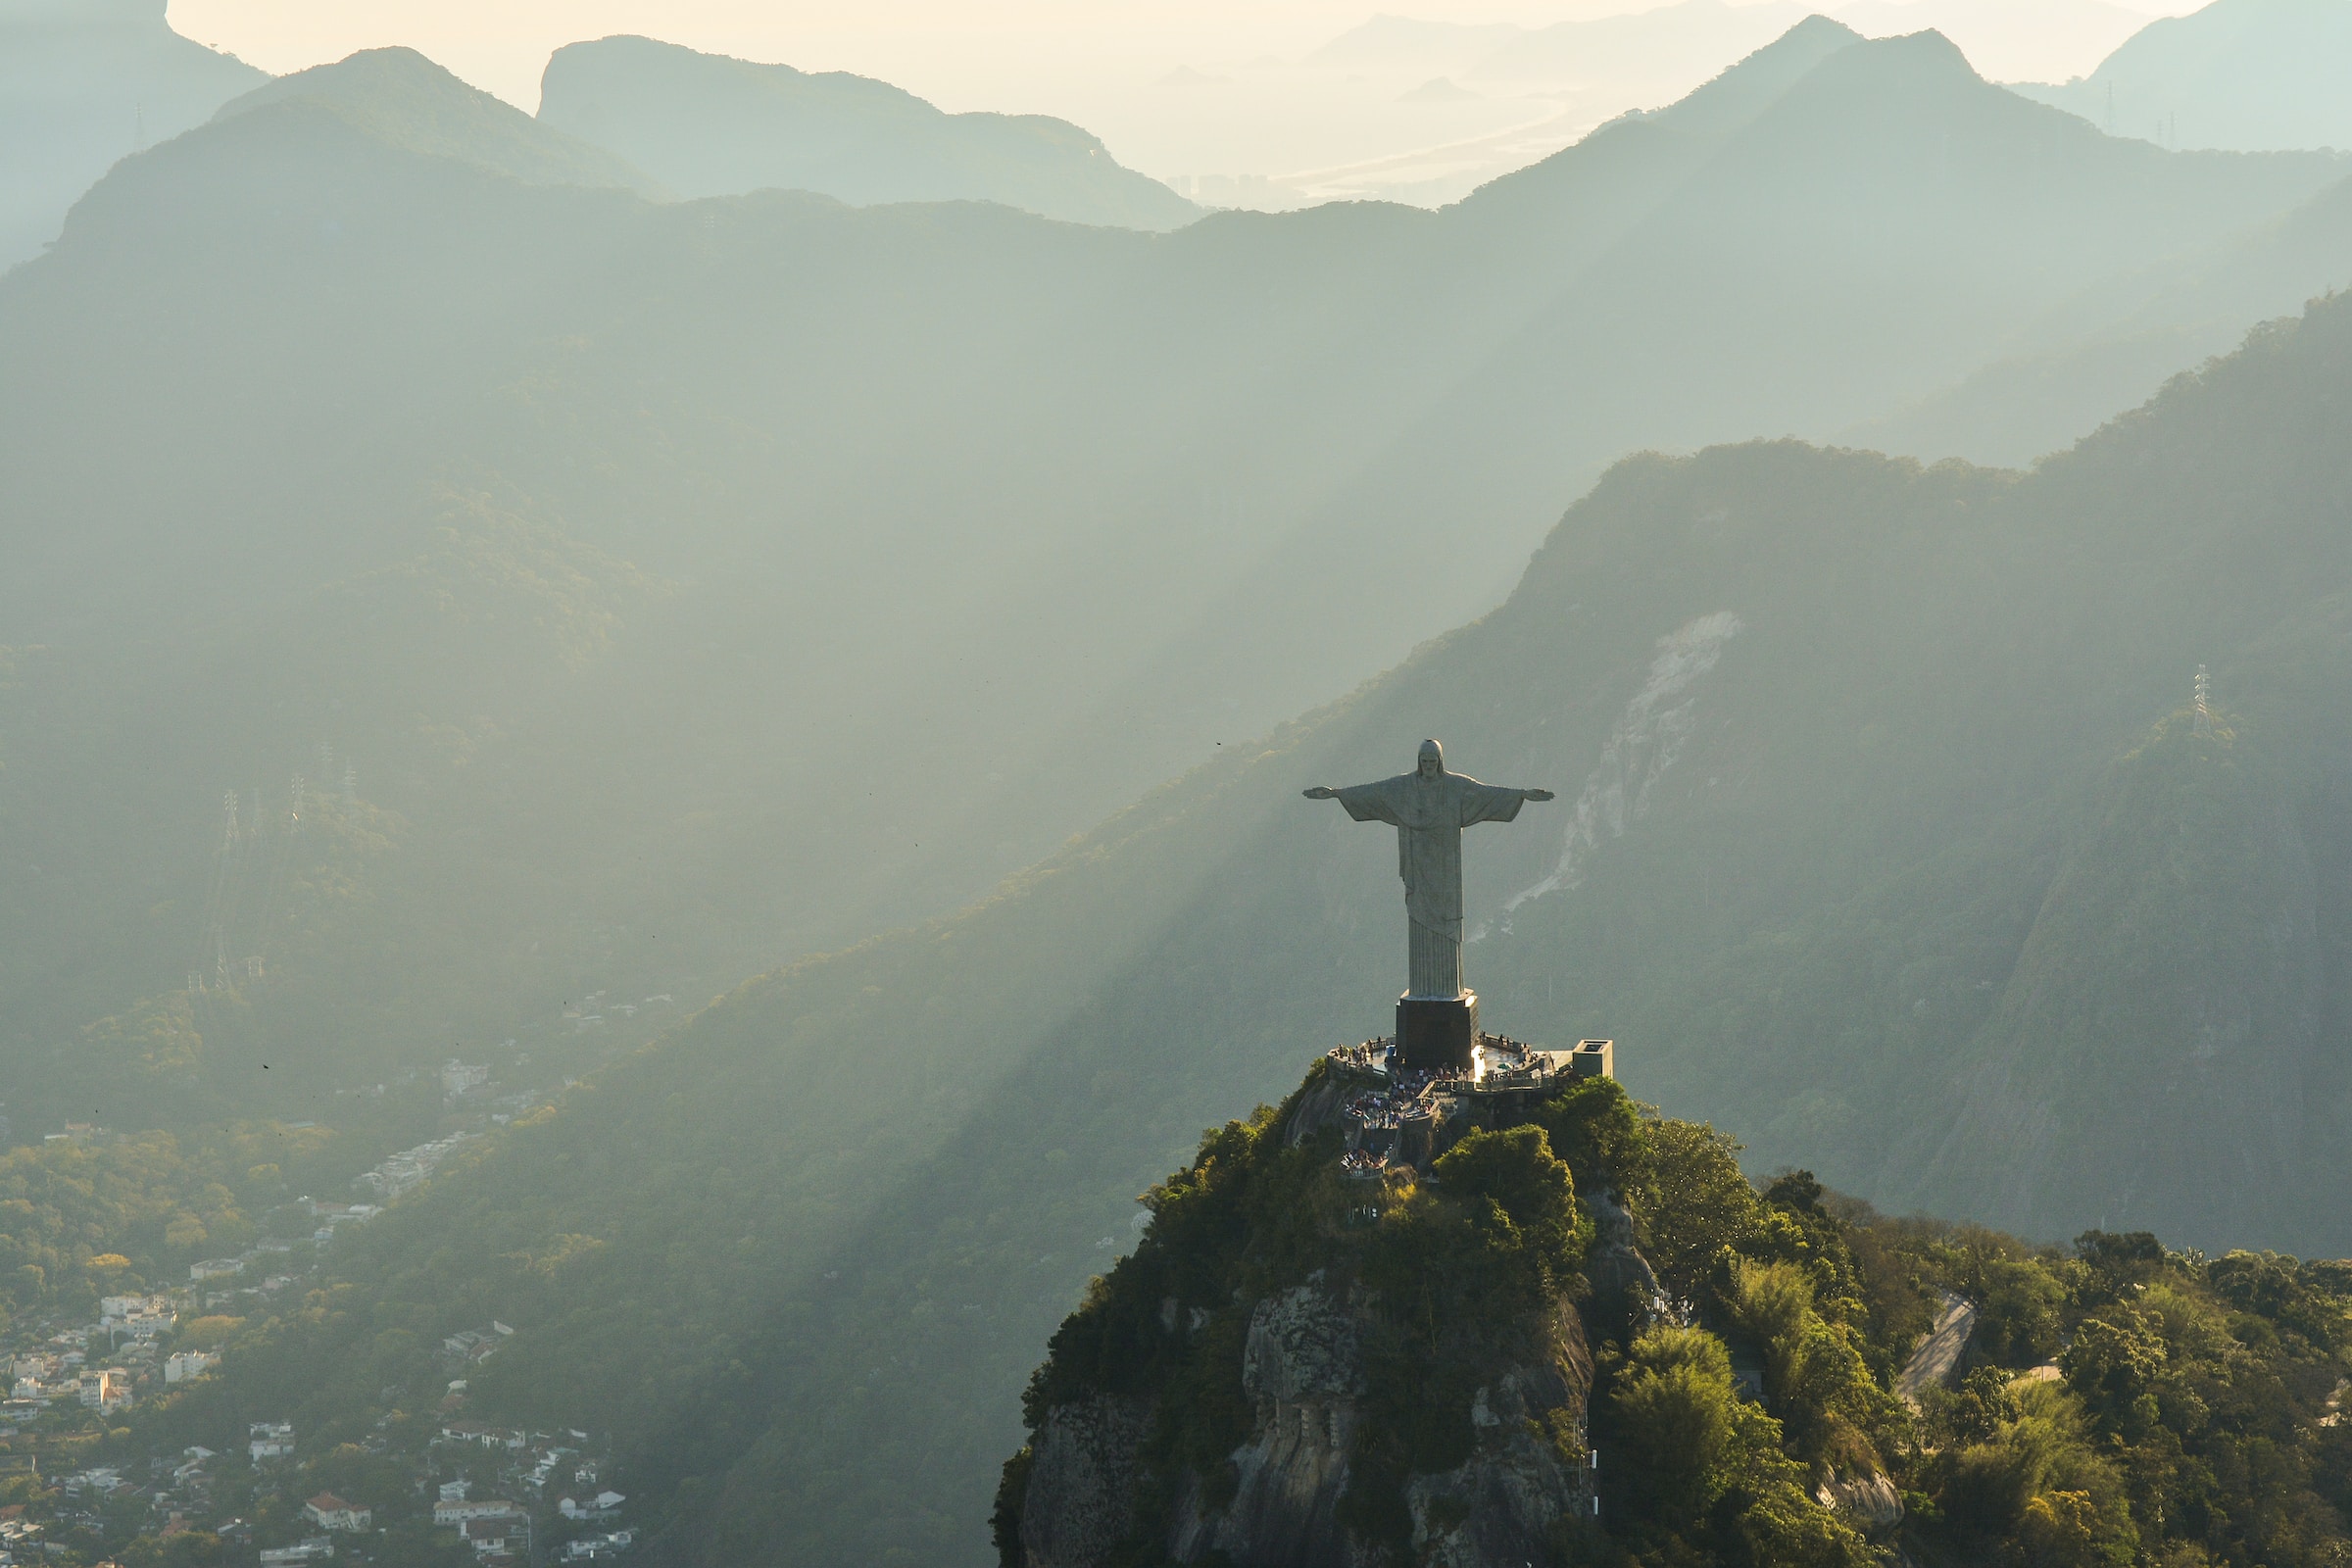 Panoramic view of Rio de Janeiro